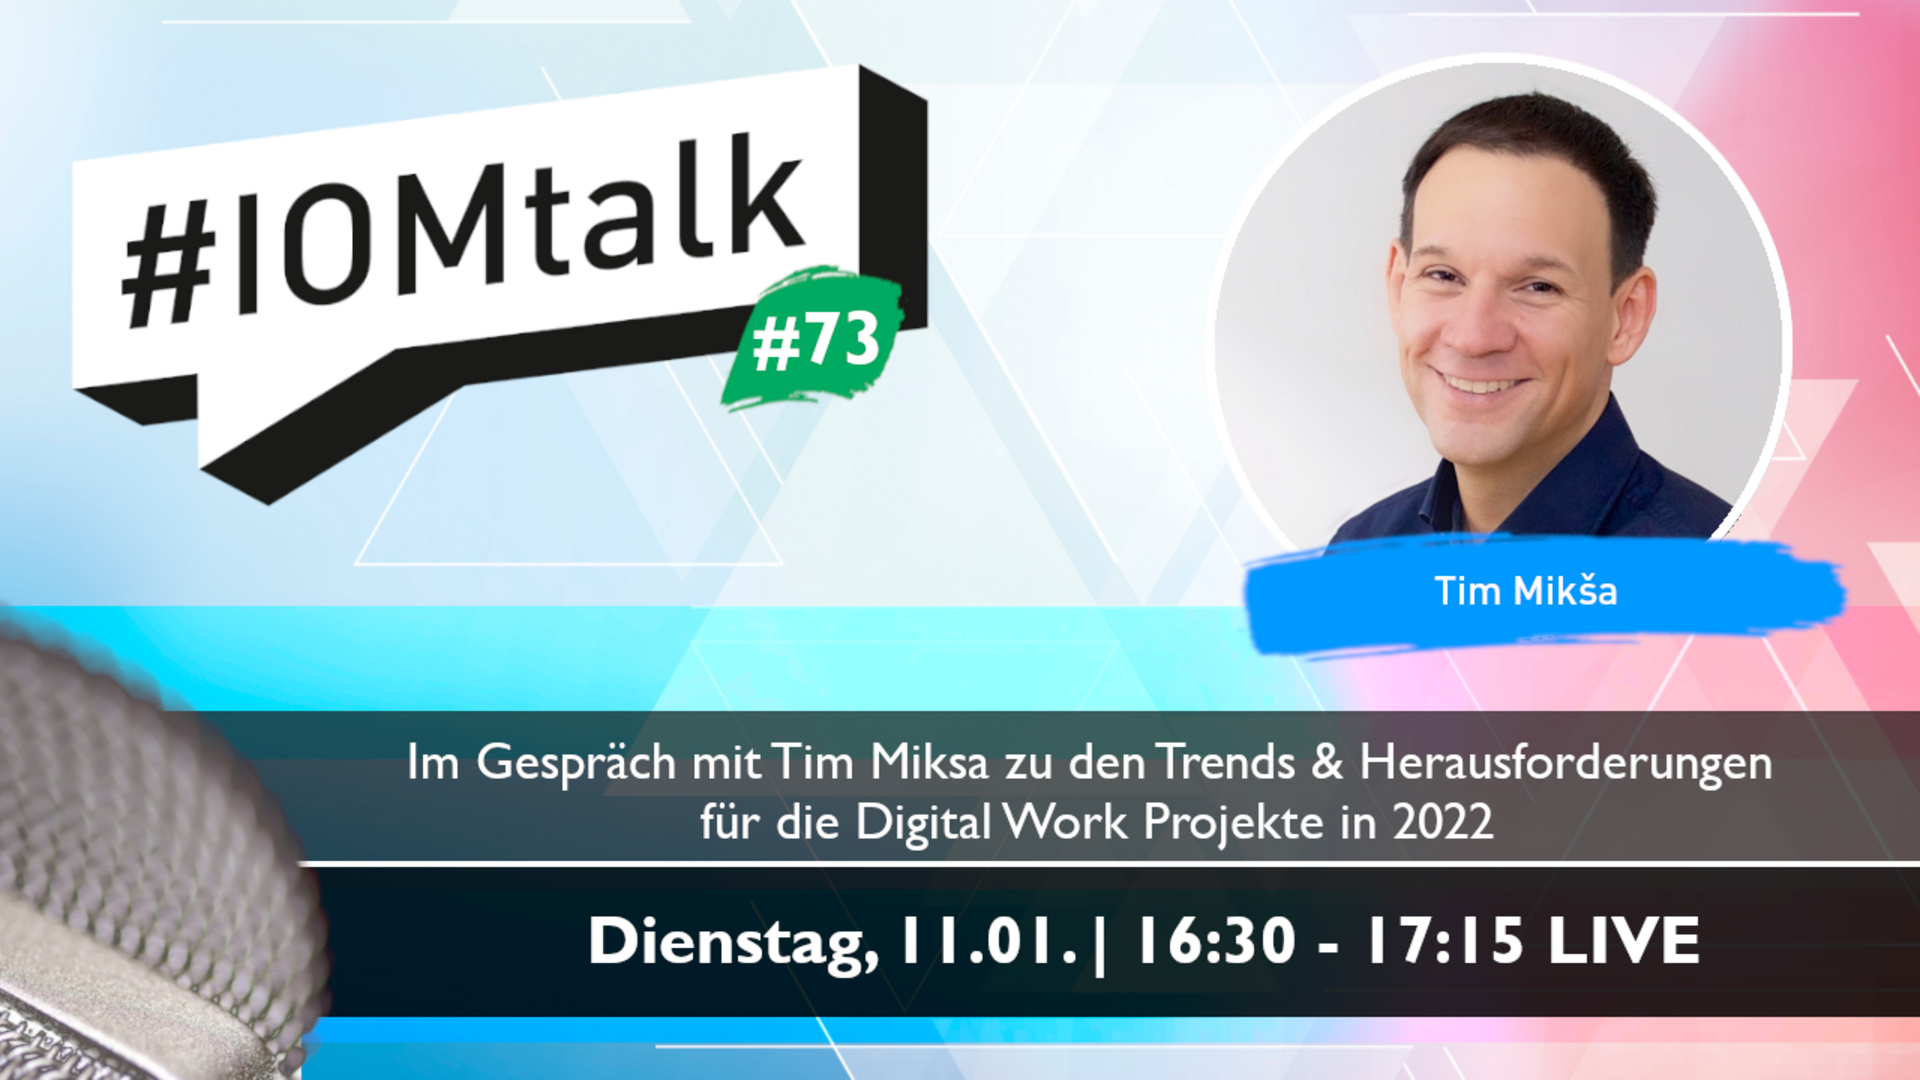 Im Gespräch mit Tim Mikša zu den Trends & Herausforderungen für die Digital Work Projekte in 2022